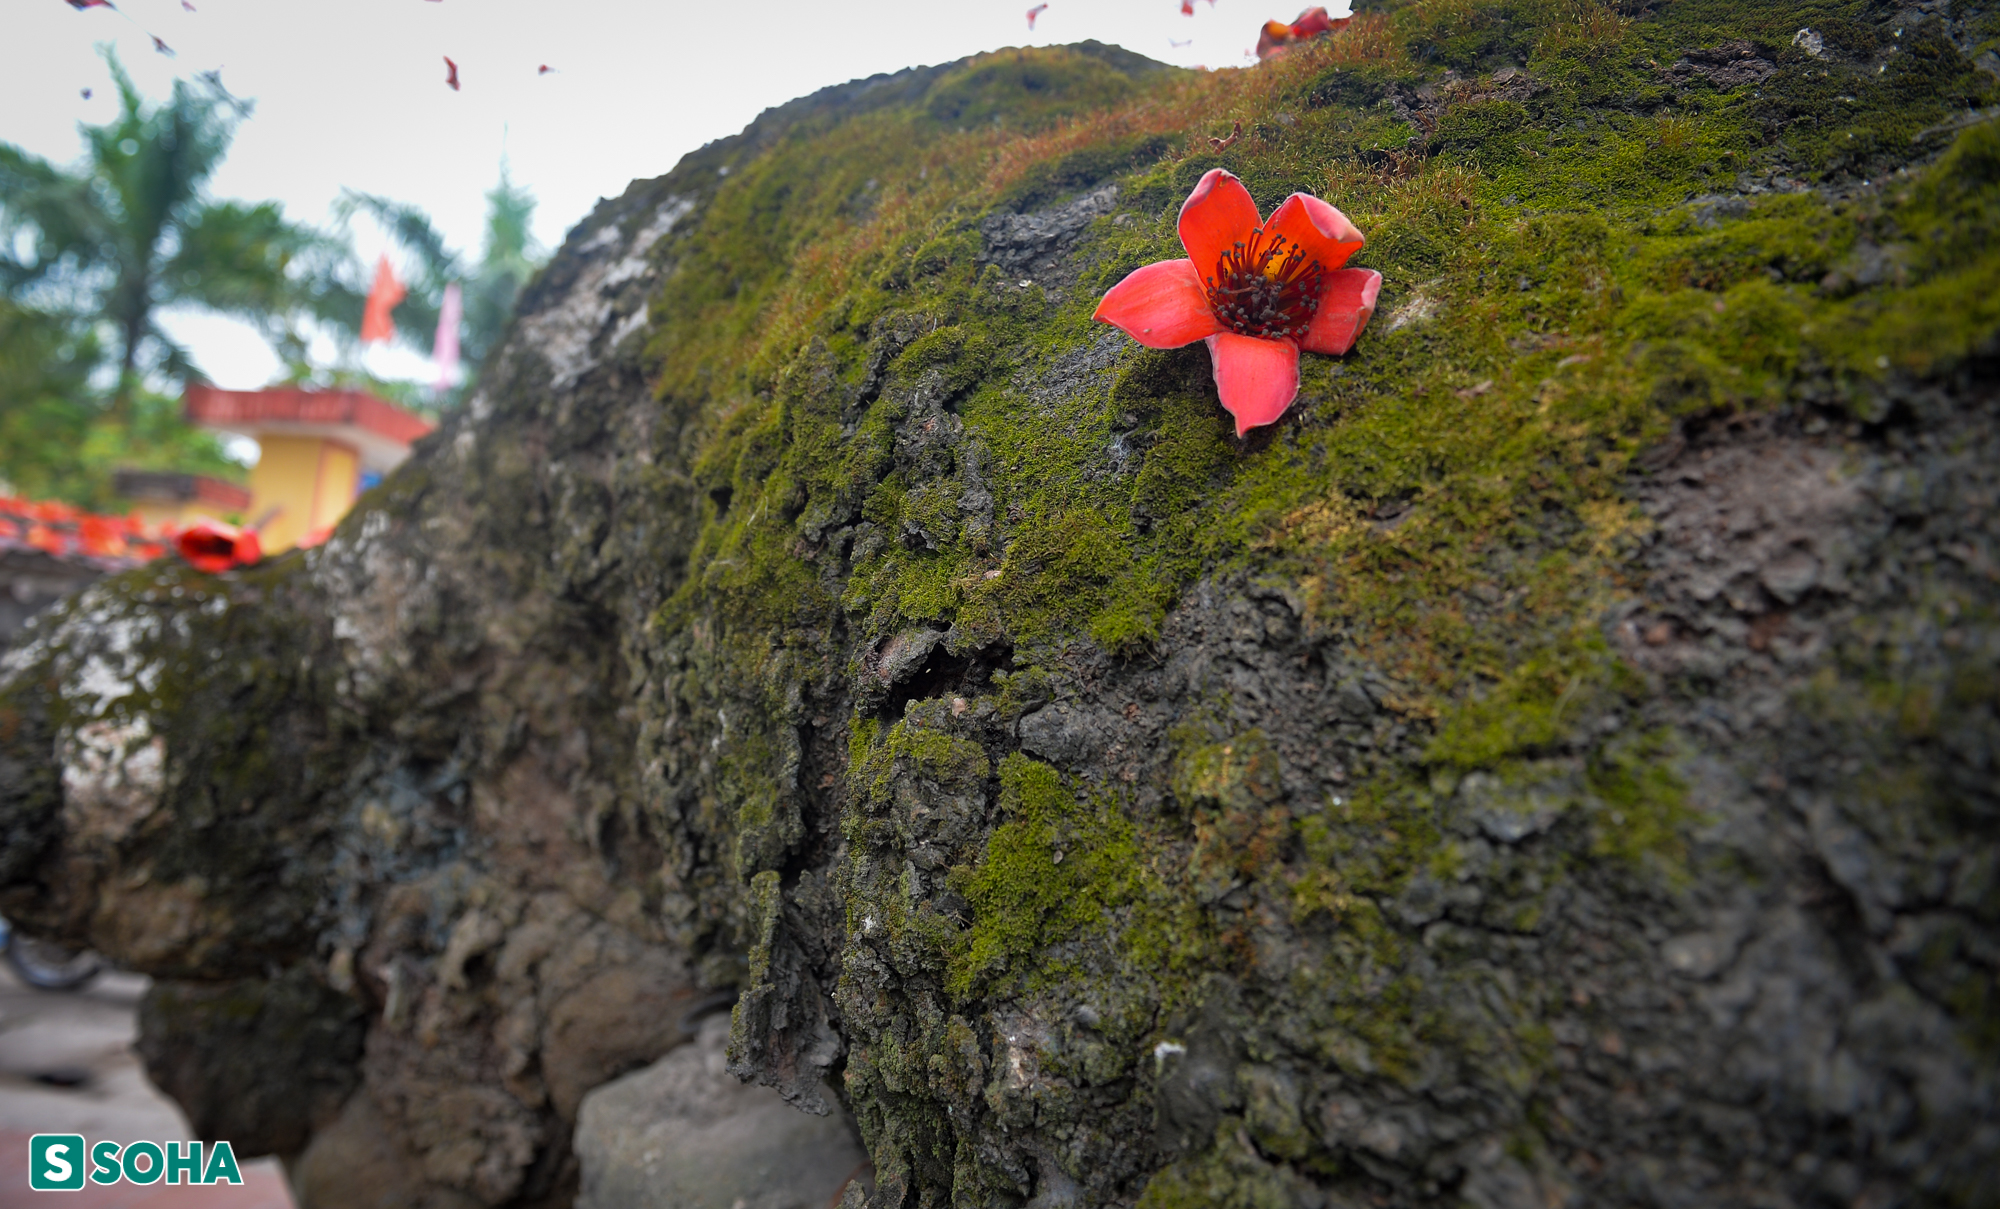 Mãn nhãn chiêm ngưỡng cây gạo gù, thân dáng rồng nở hoa đỏ rực ở Thái Bình - Ảnh 3.